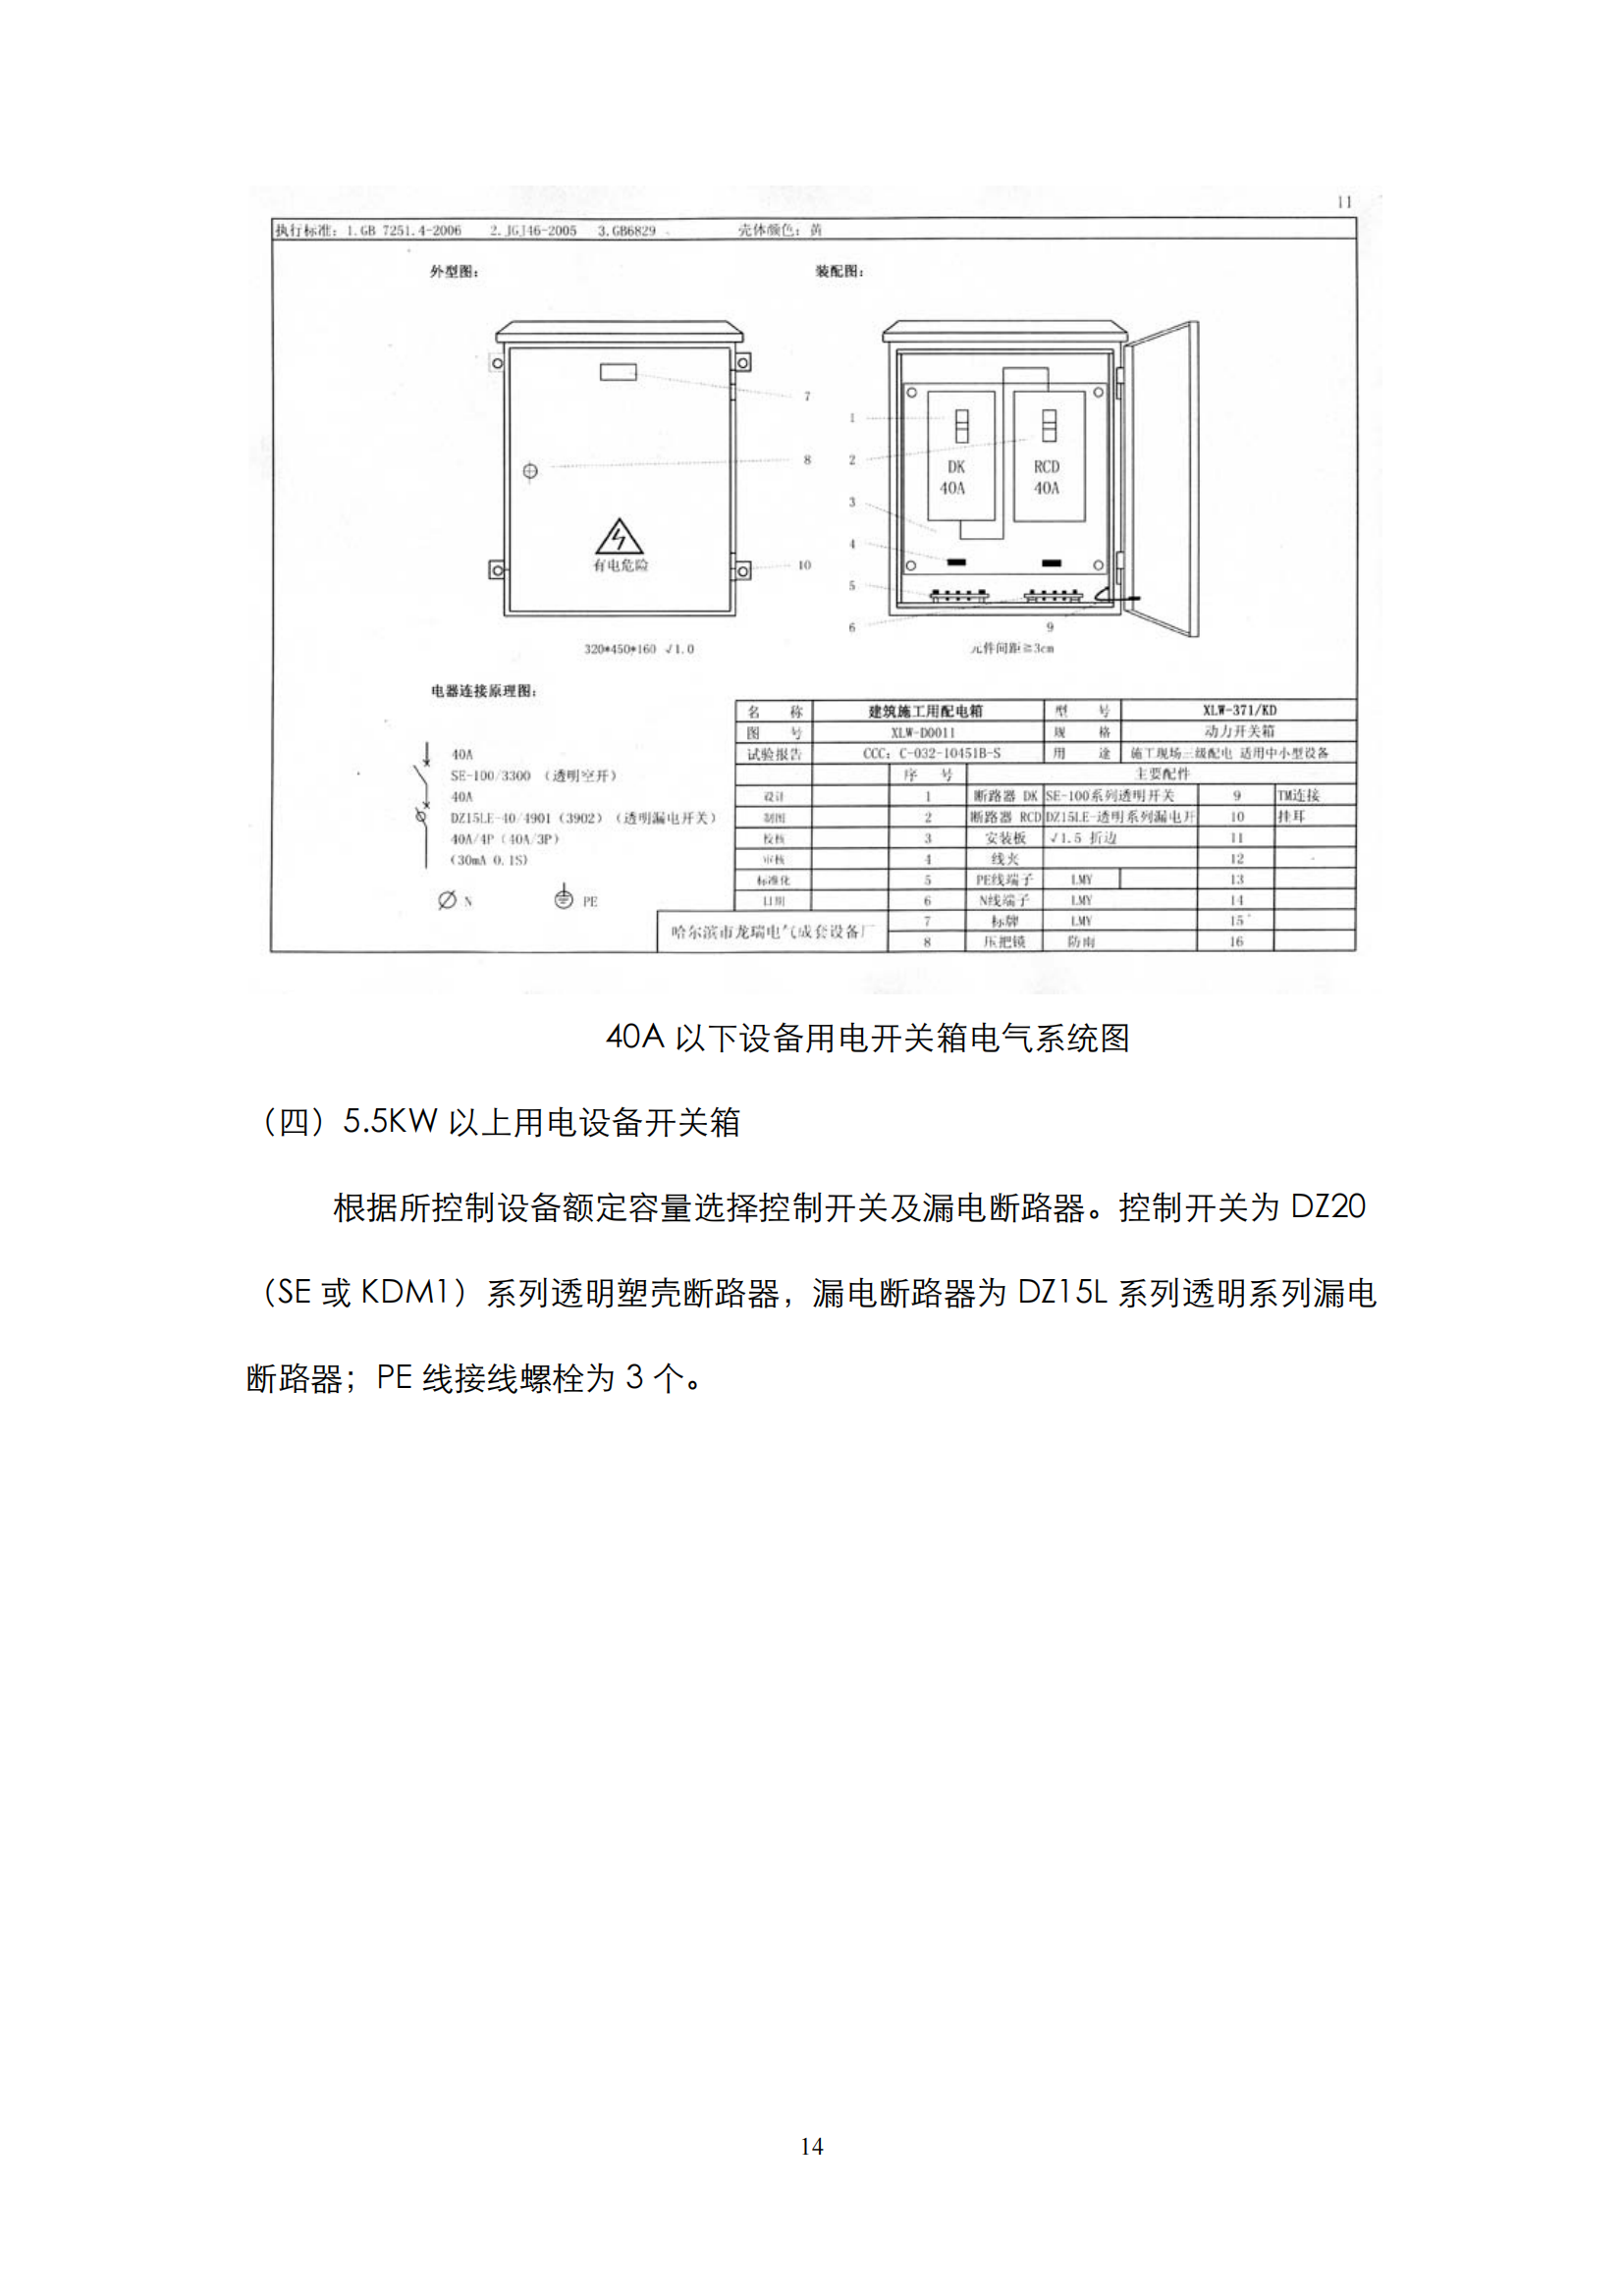 施工现场临时用电配电箱标准化配置图集插图(14)